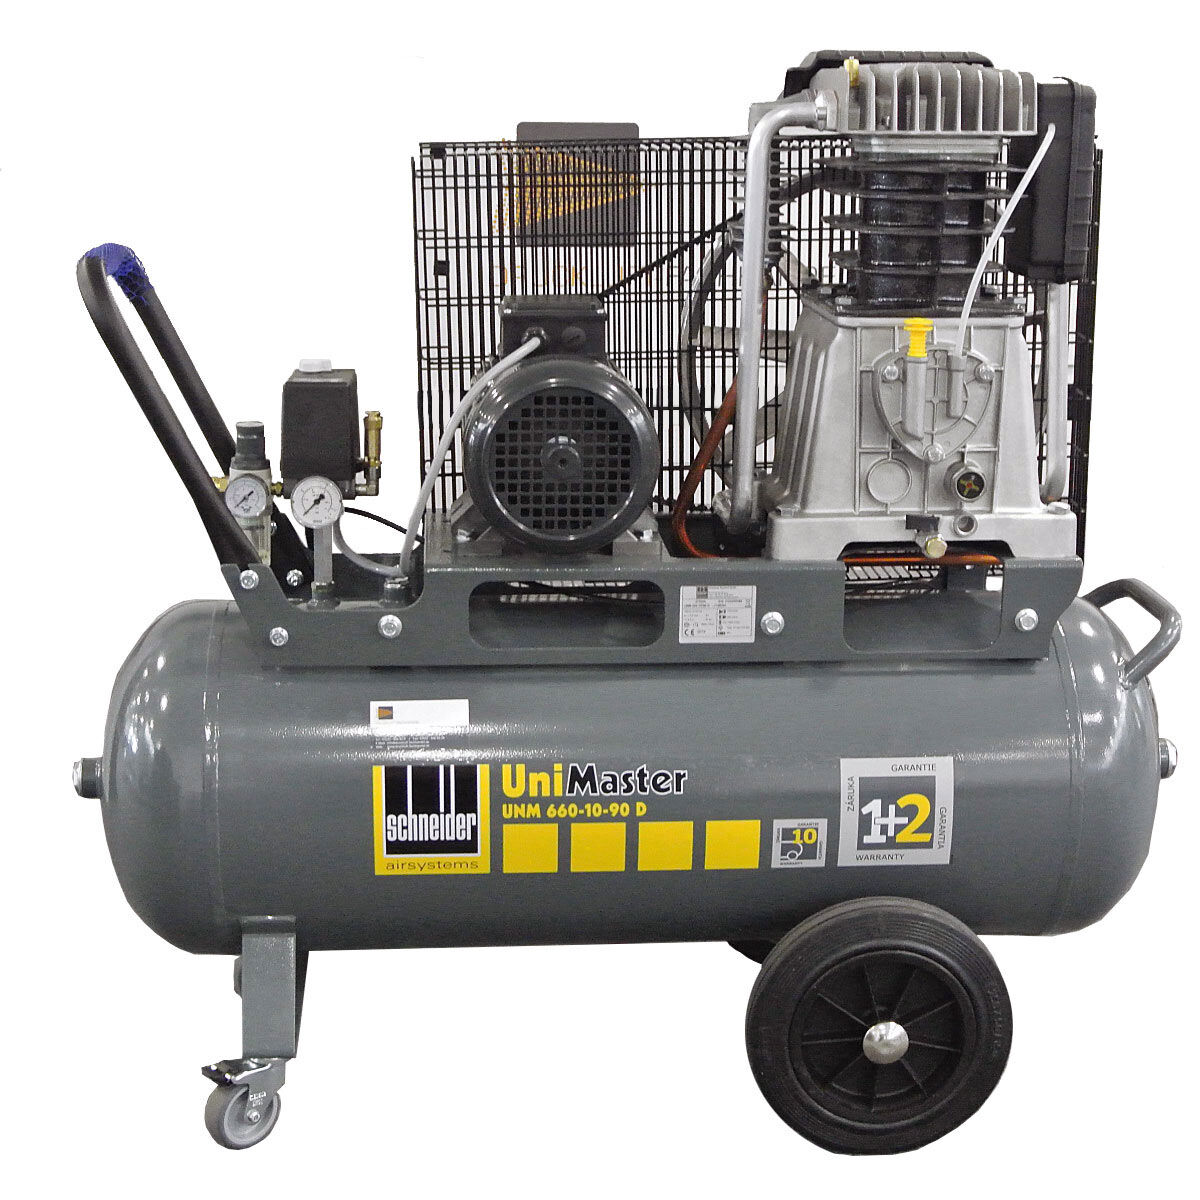 Compressore Schneider UNM 660-10-90 D 1121560006